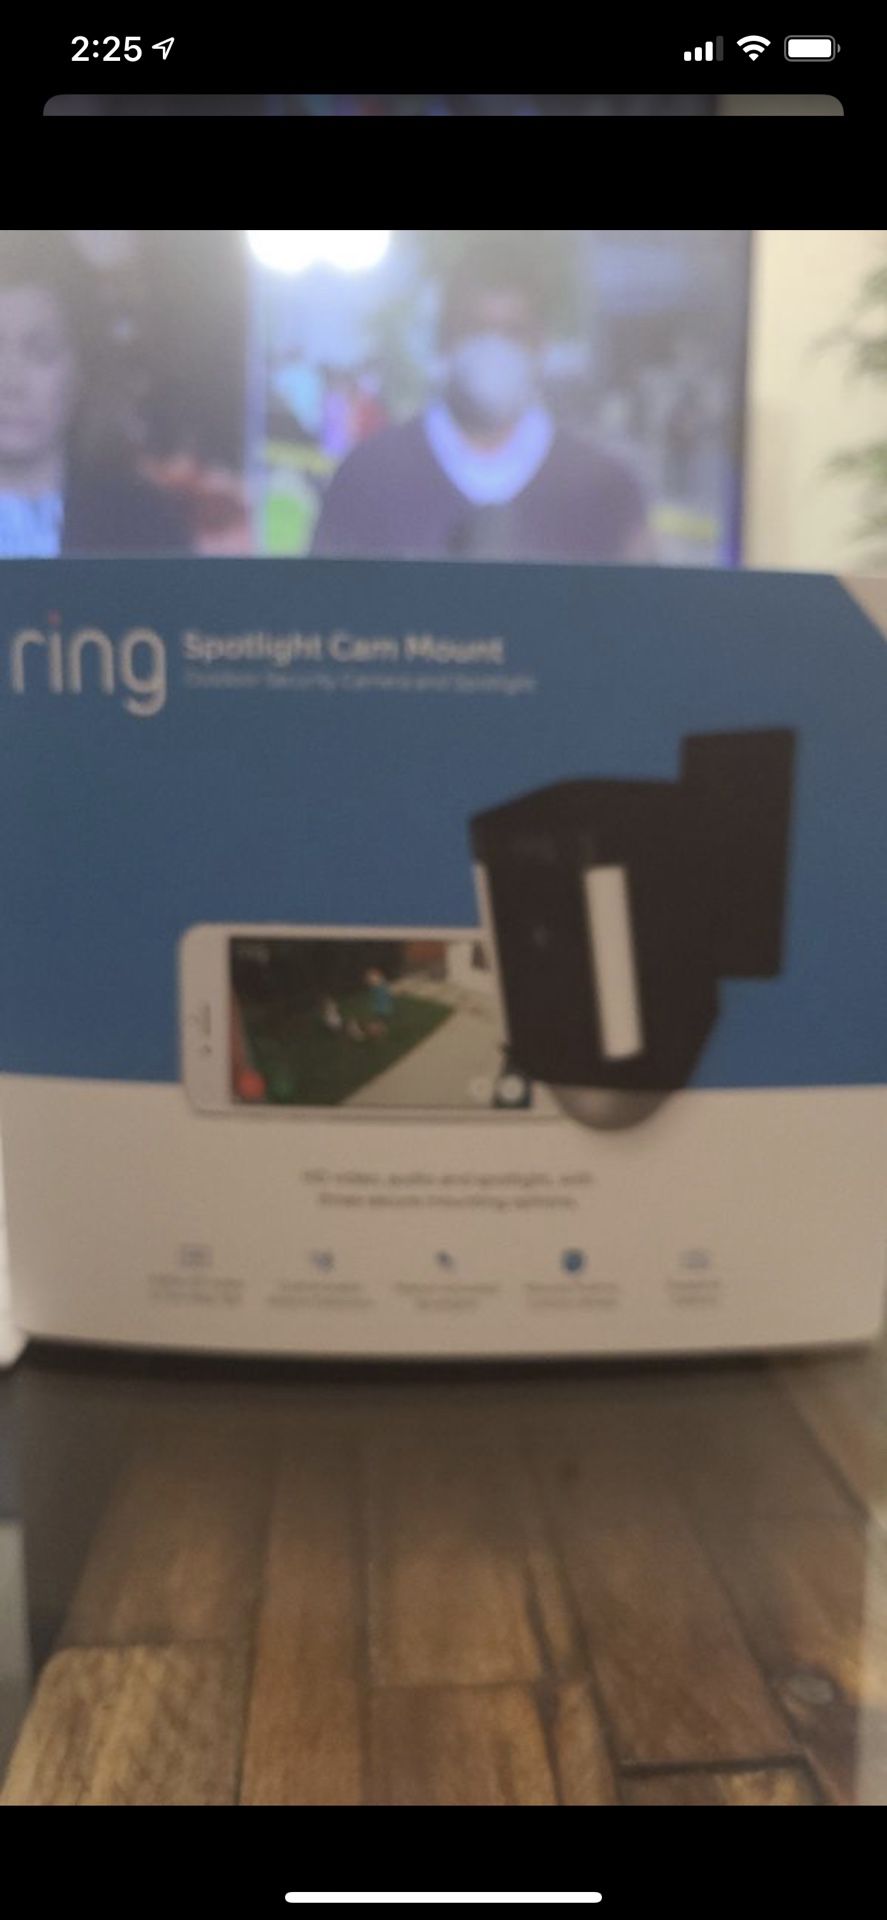 Ring spotlight cam mount